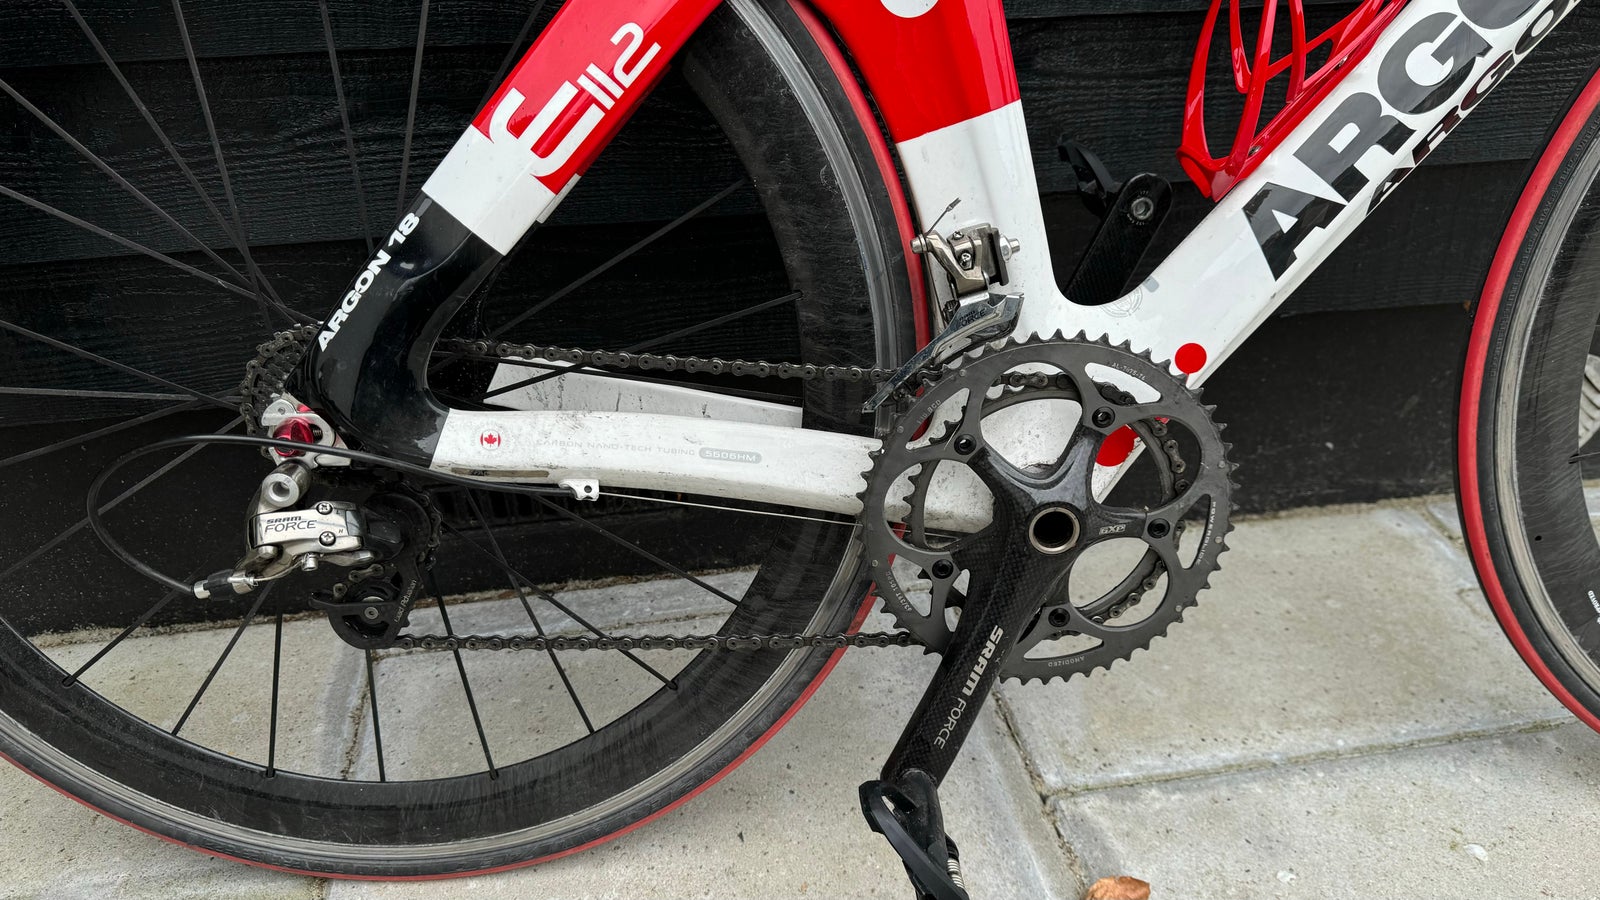 Triatloncykel, Argon 18 E112, 11 gear